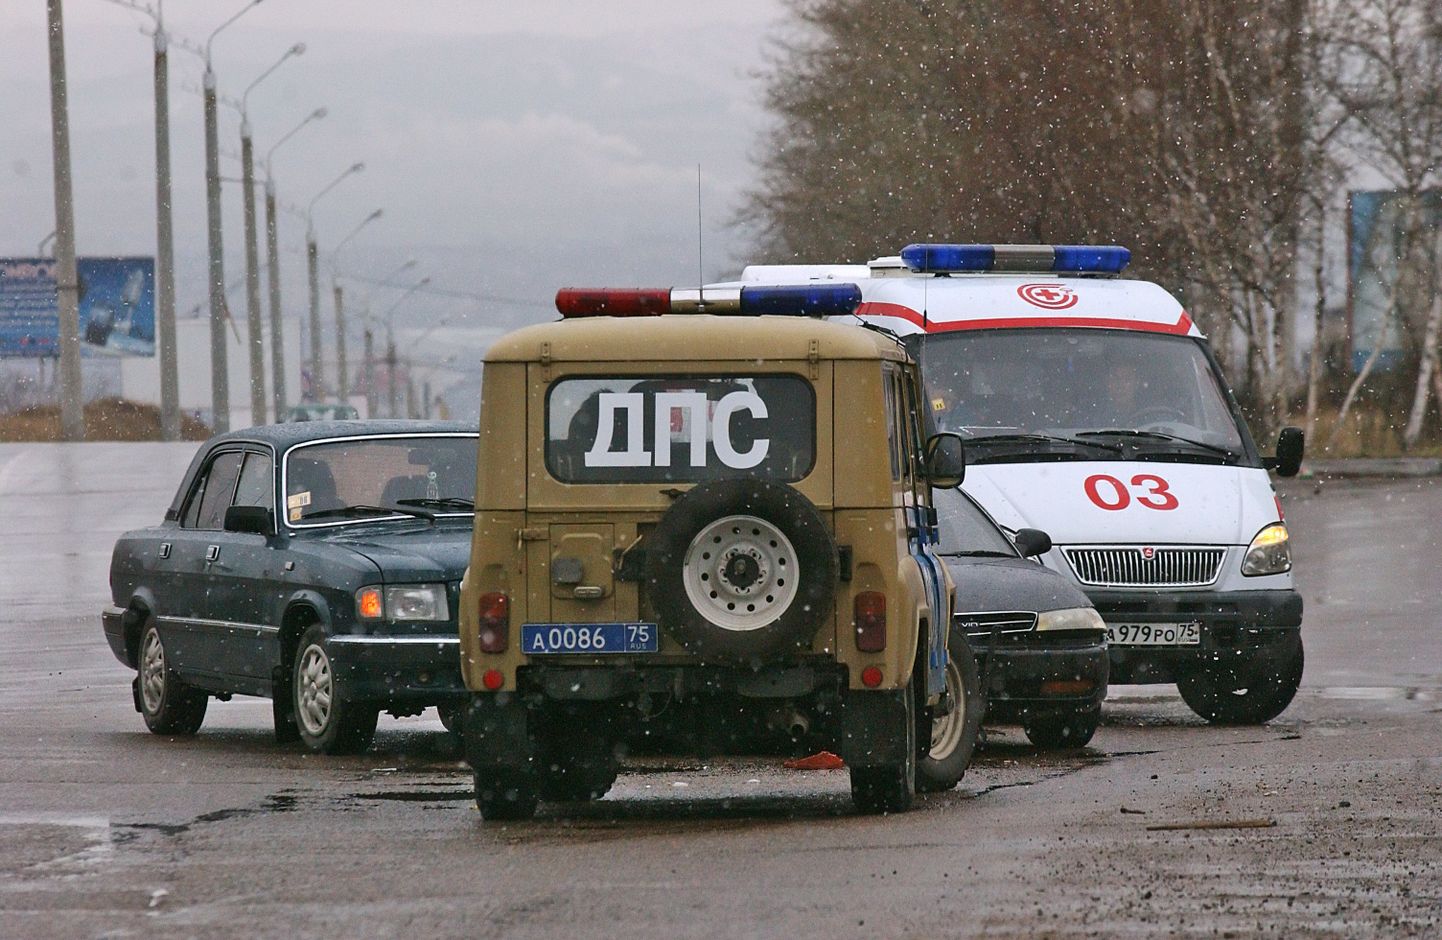 Vene kiirabi ja liiklusmiilits avariipaigal.